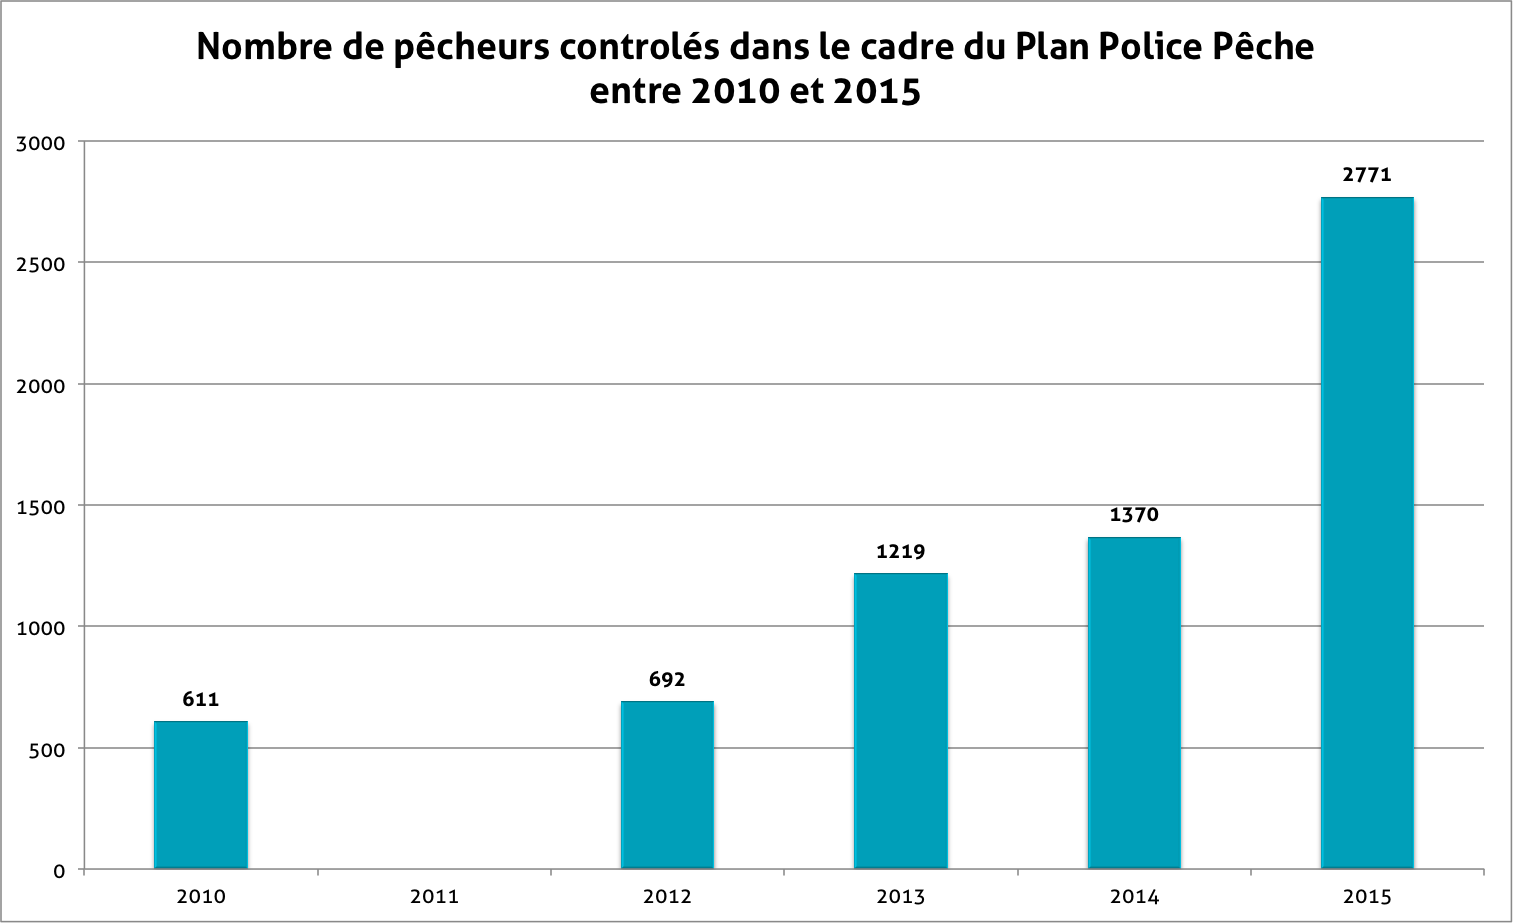 Graphique du nombre de pêcheurs contrôlés de 2010 à 2015 dans le cadre du plan police pêche